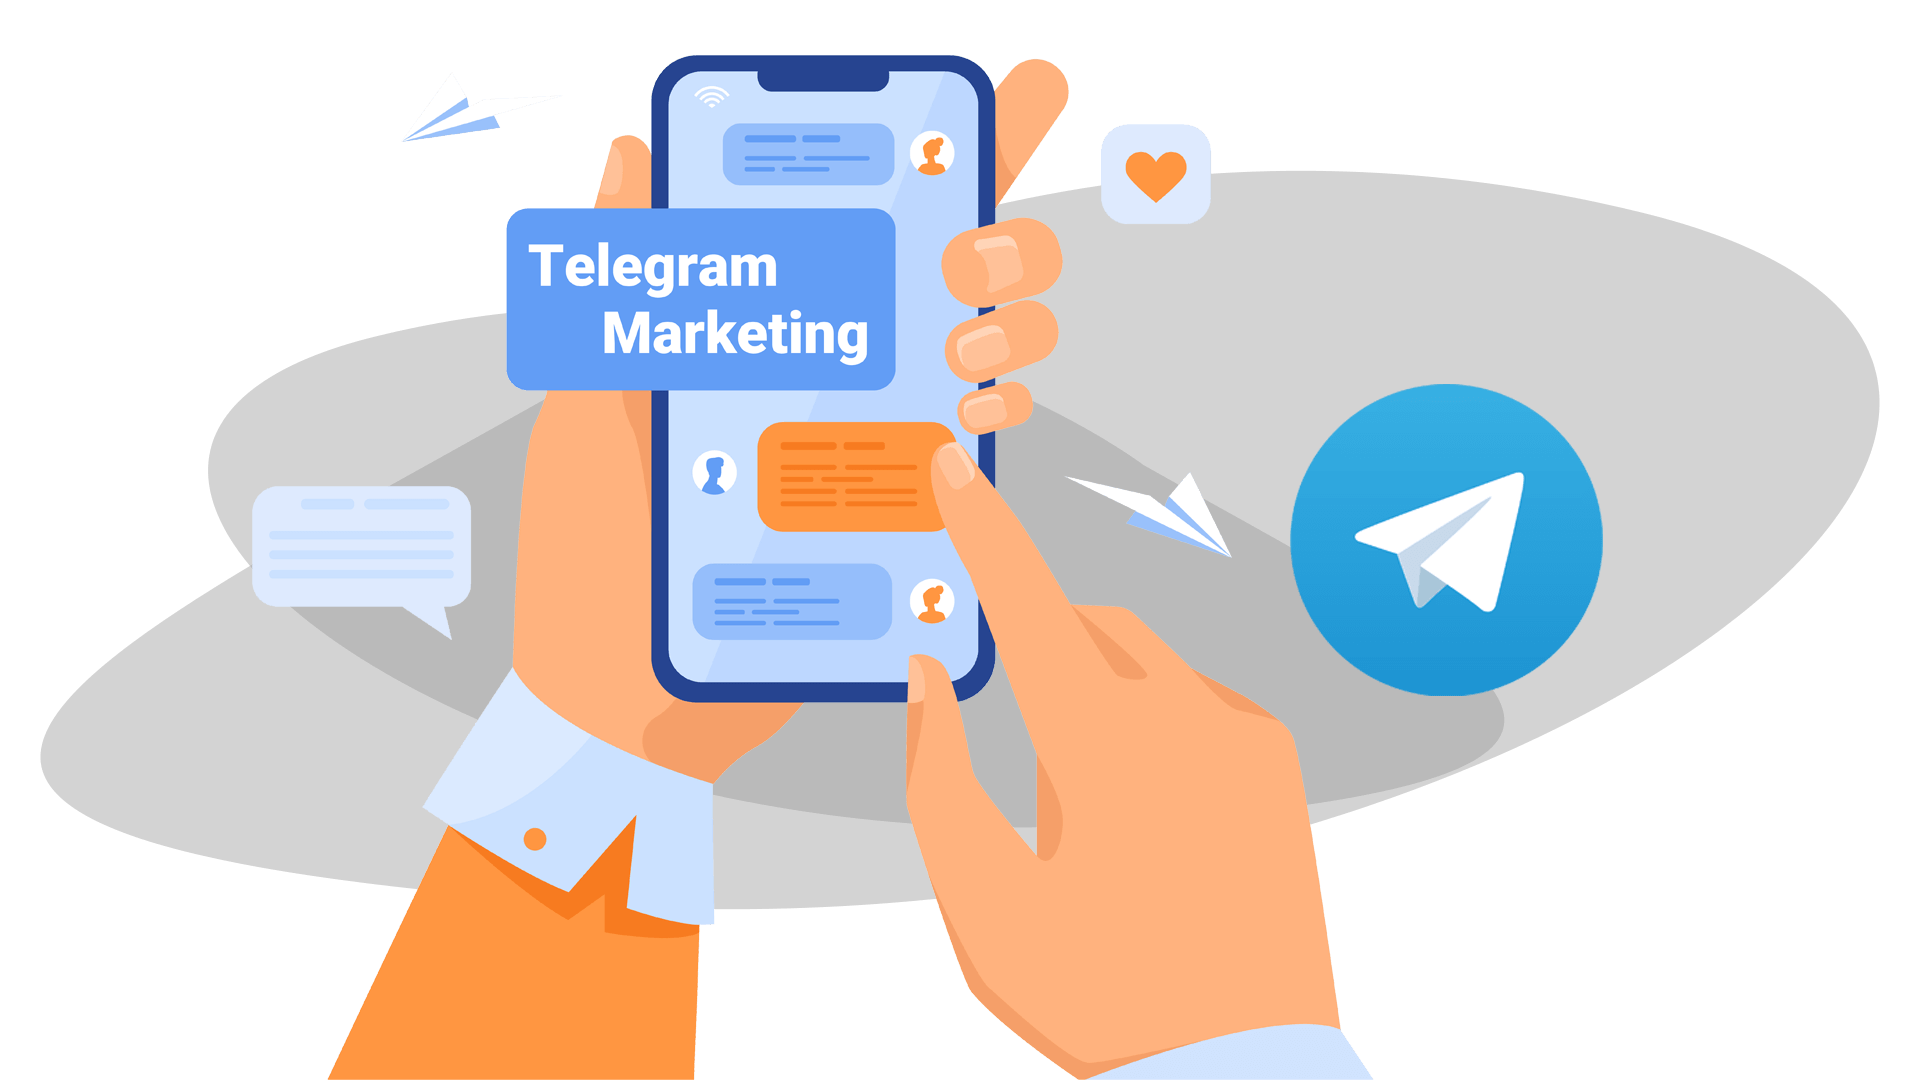 تبلیغات هدفمند در تلگرام